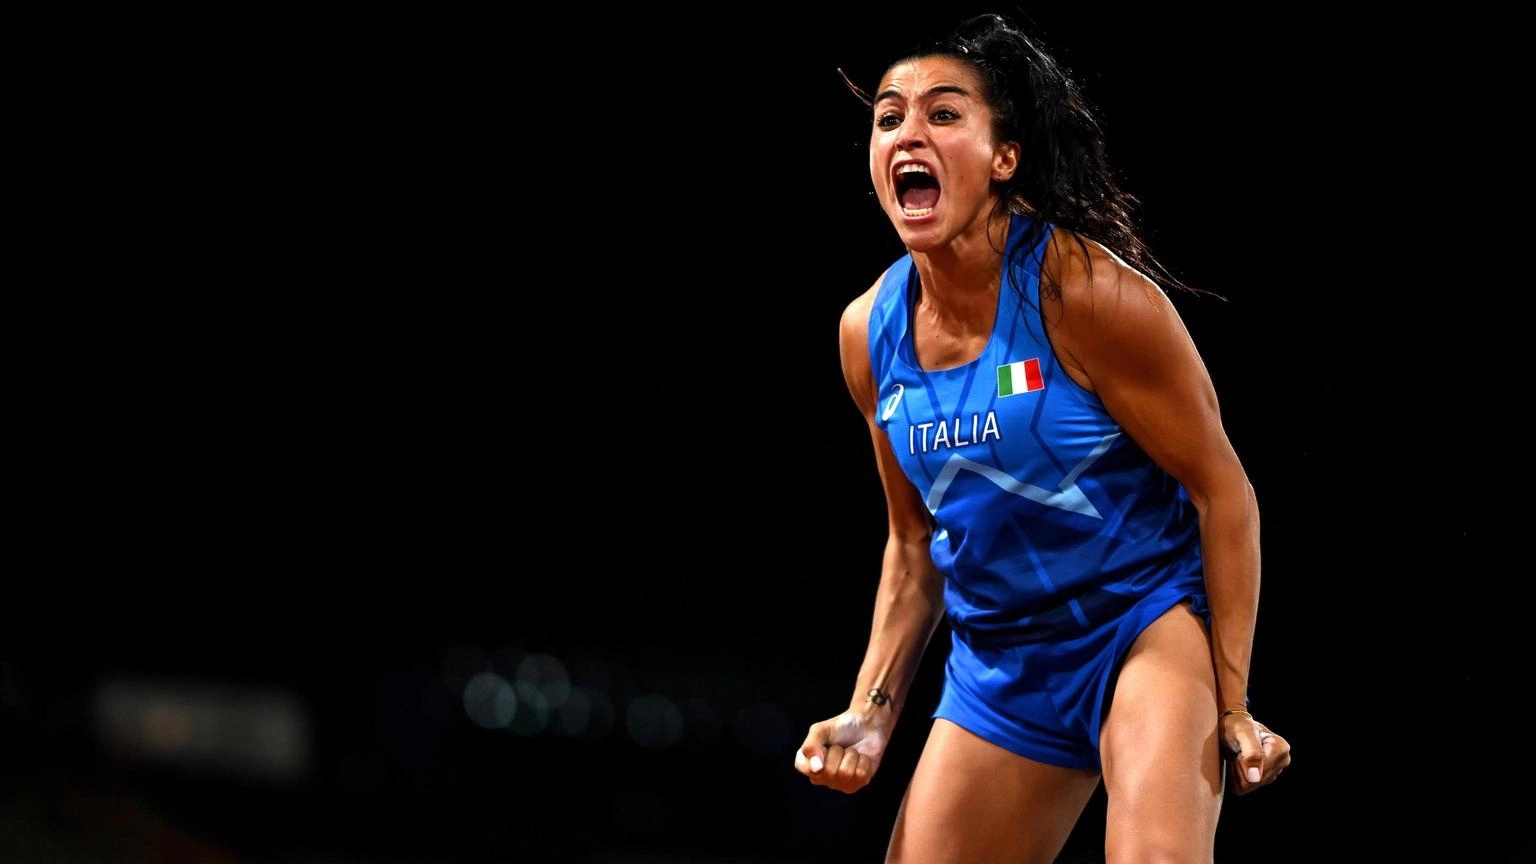 Atletica: Roberta Bruni si riprende record del salto con l'asta